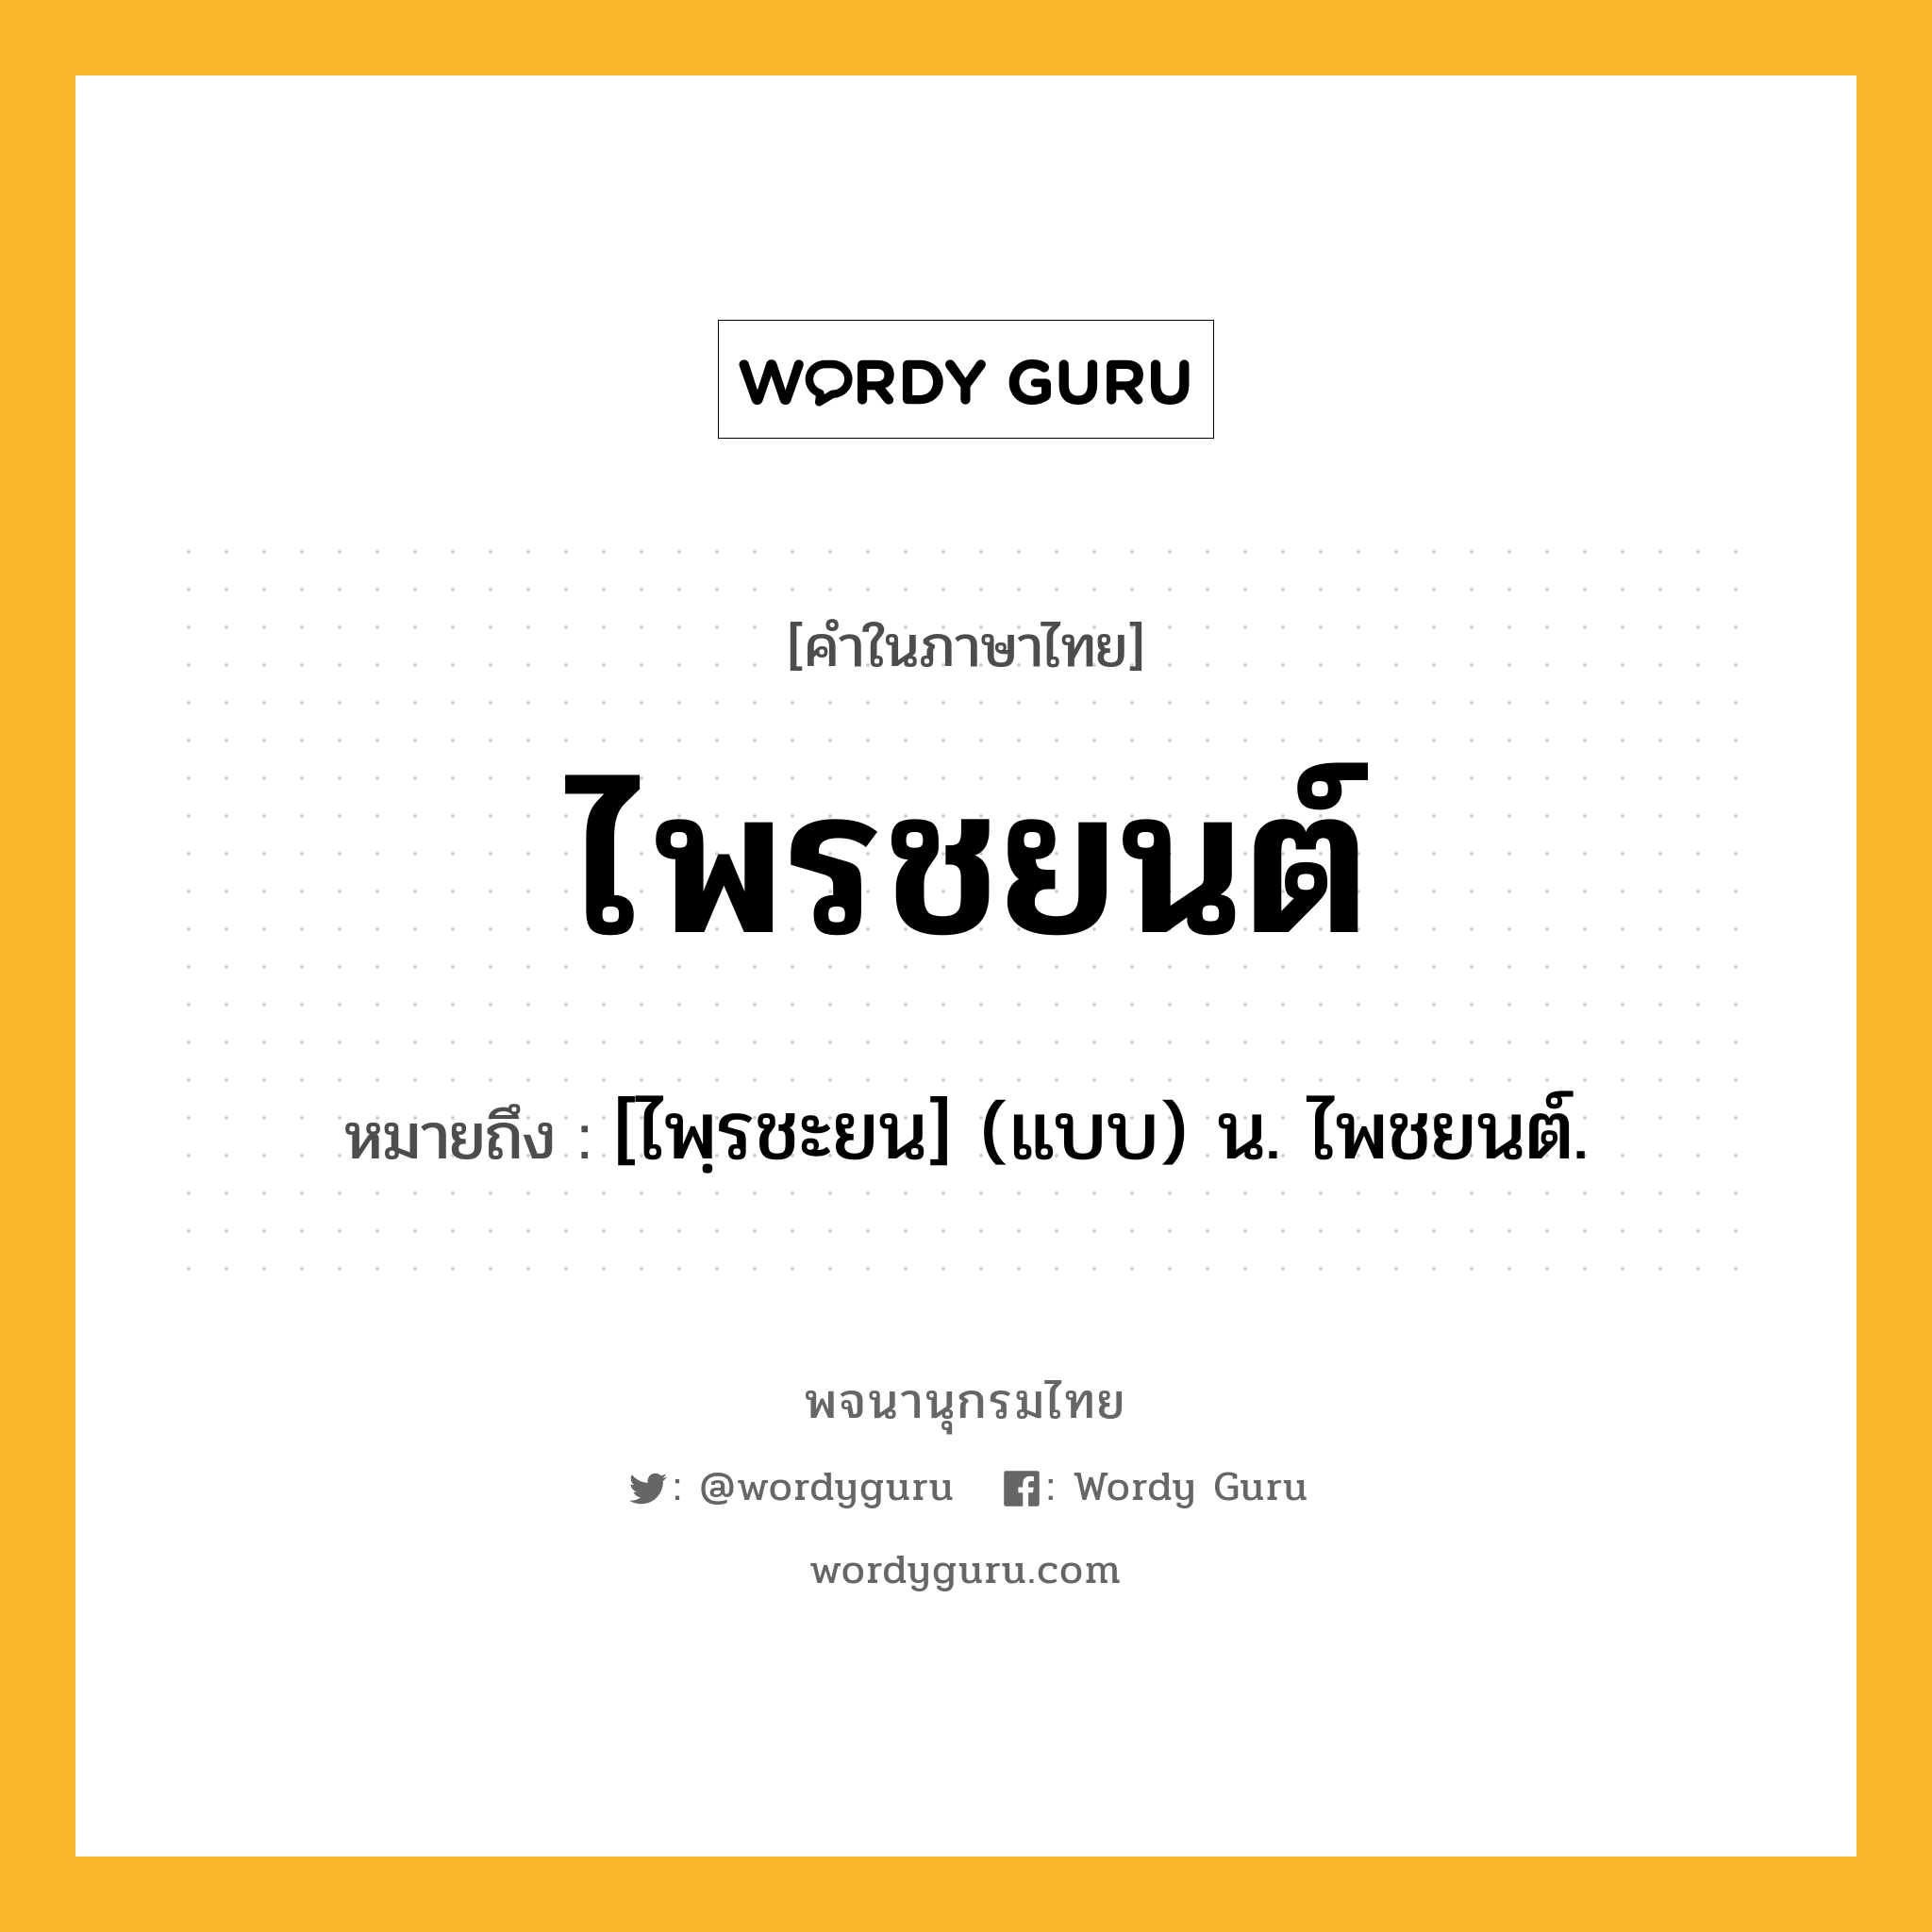 ไพรชยนต์ ความหมาย หมายถึงอะไร?, คำในภาษาไทย ไพรชยนต์ หมายถึง [ไพฺรชะยน] (แบบ) น. ไพชยนต์.